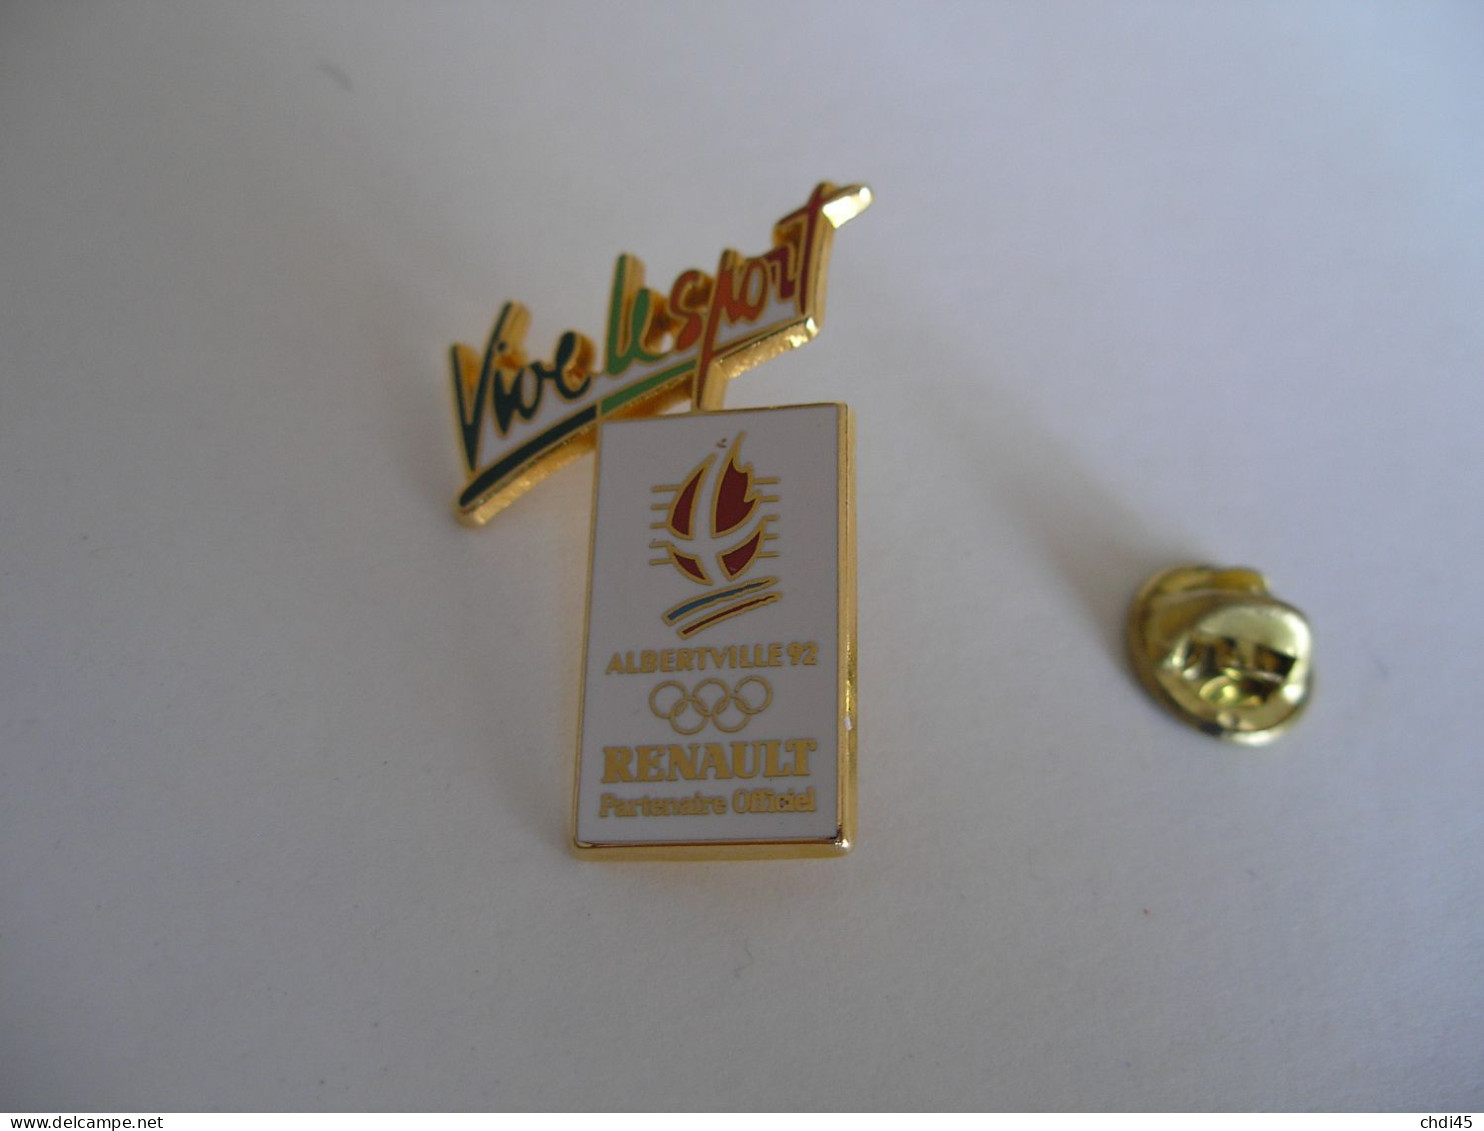 RENAULT Partenaire Officiel VIVE LE SPORT JO ALBERTVILLE 92 - Jeux Olympiques